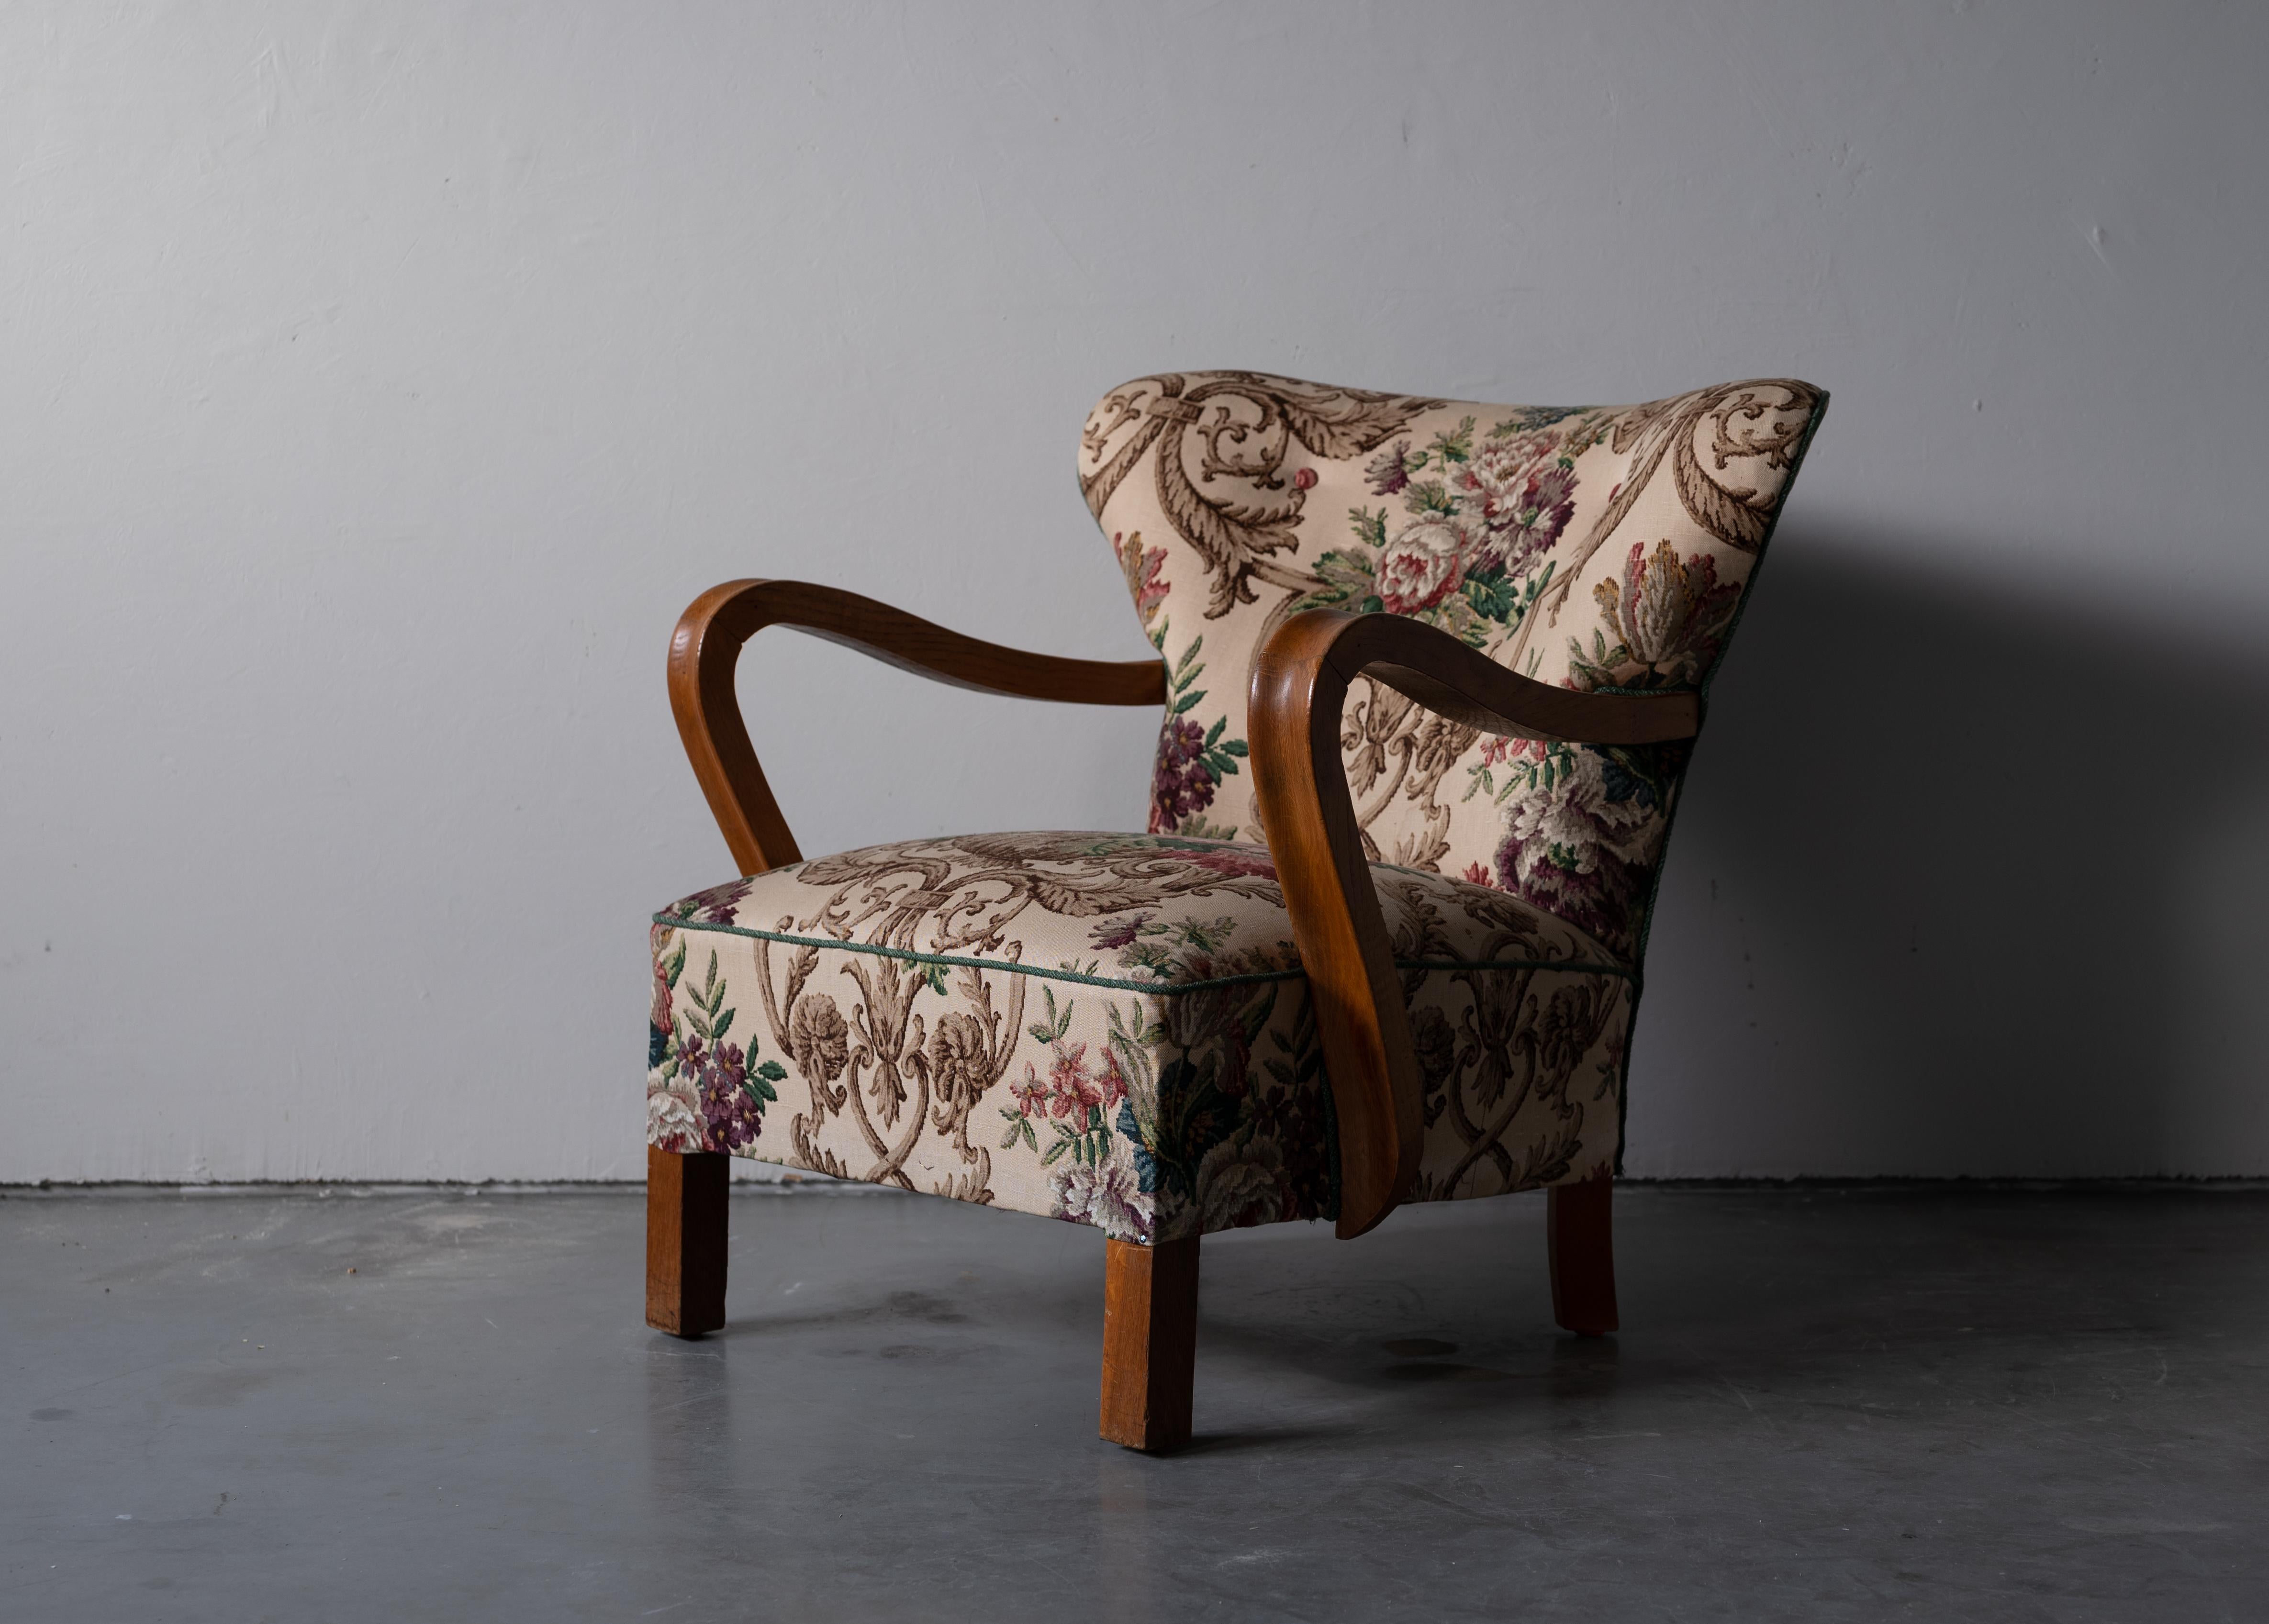 Une chaise longue organique, conçue et produite au Danemark, dans les années 1940. 

Hêtre teinté, tapisserie florale vintage.

Parmi les autres designers de l'époque figurent Jean Royère, Gio Ponti, Flemming Lassen, Philip Arctander et Arnold